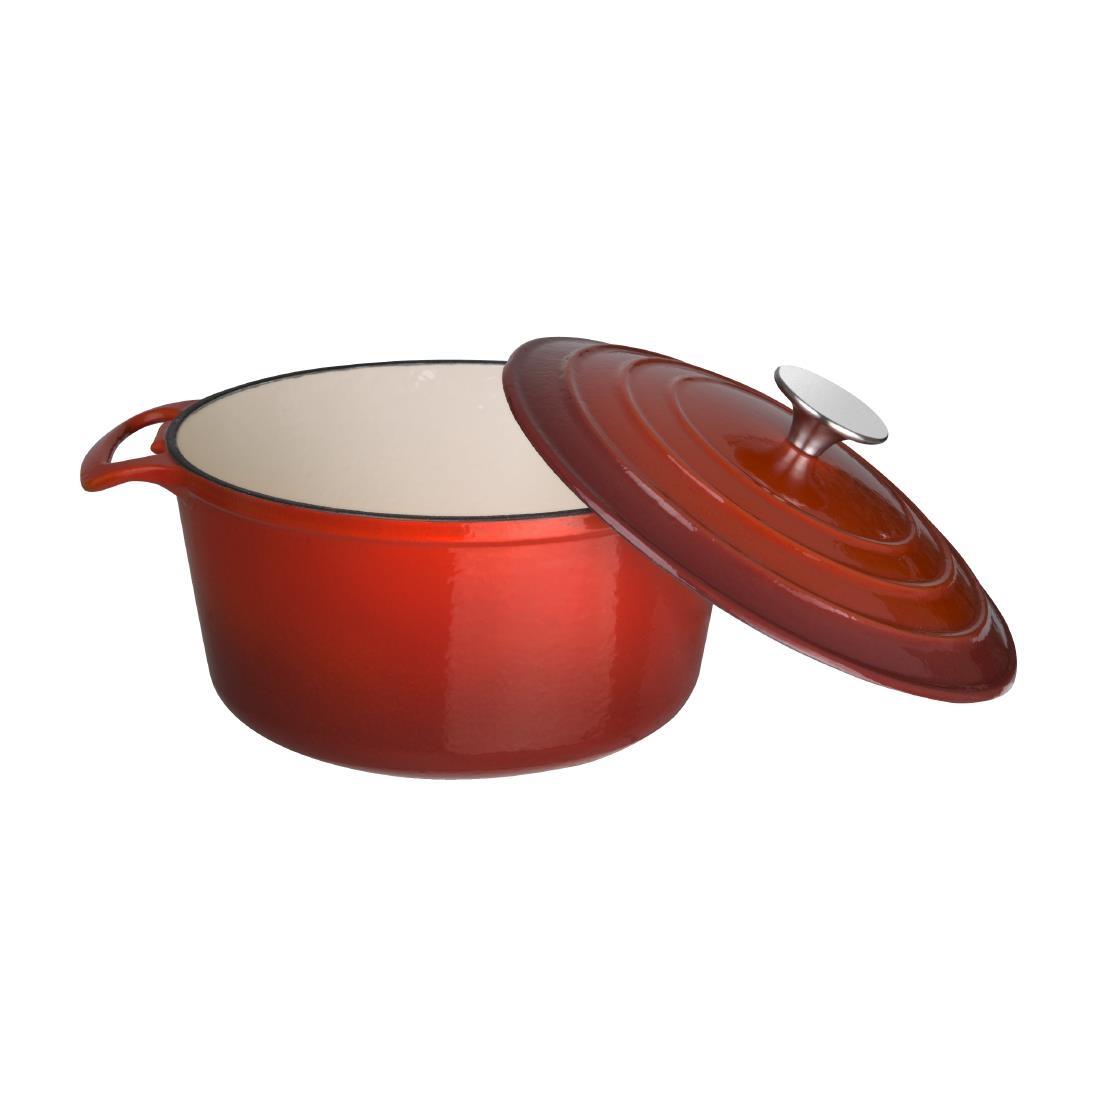 Vogue Red Round Casserole Dish 3.2Ltr - GH304  - 4